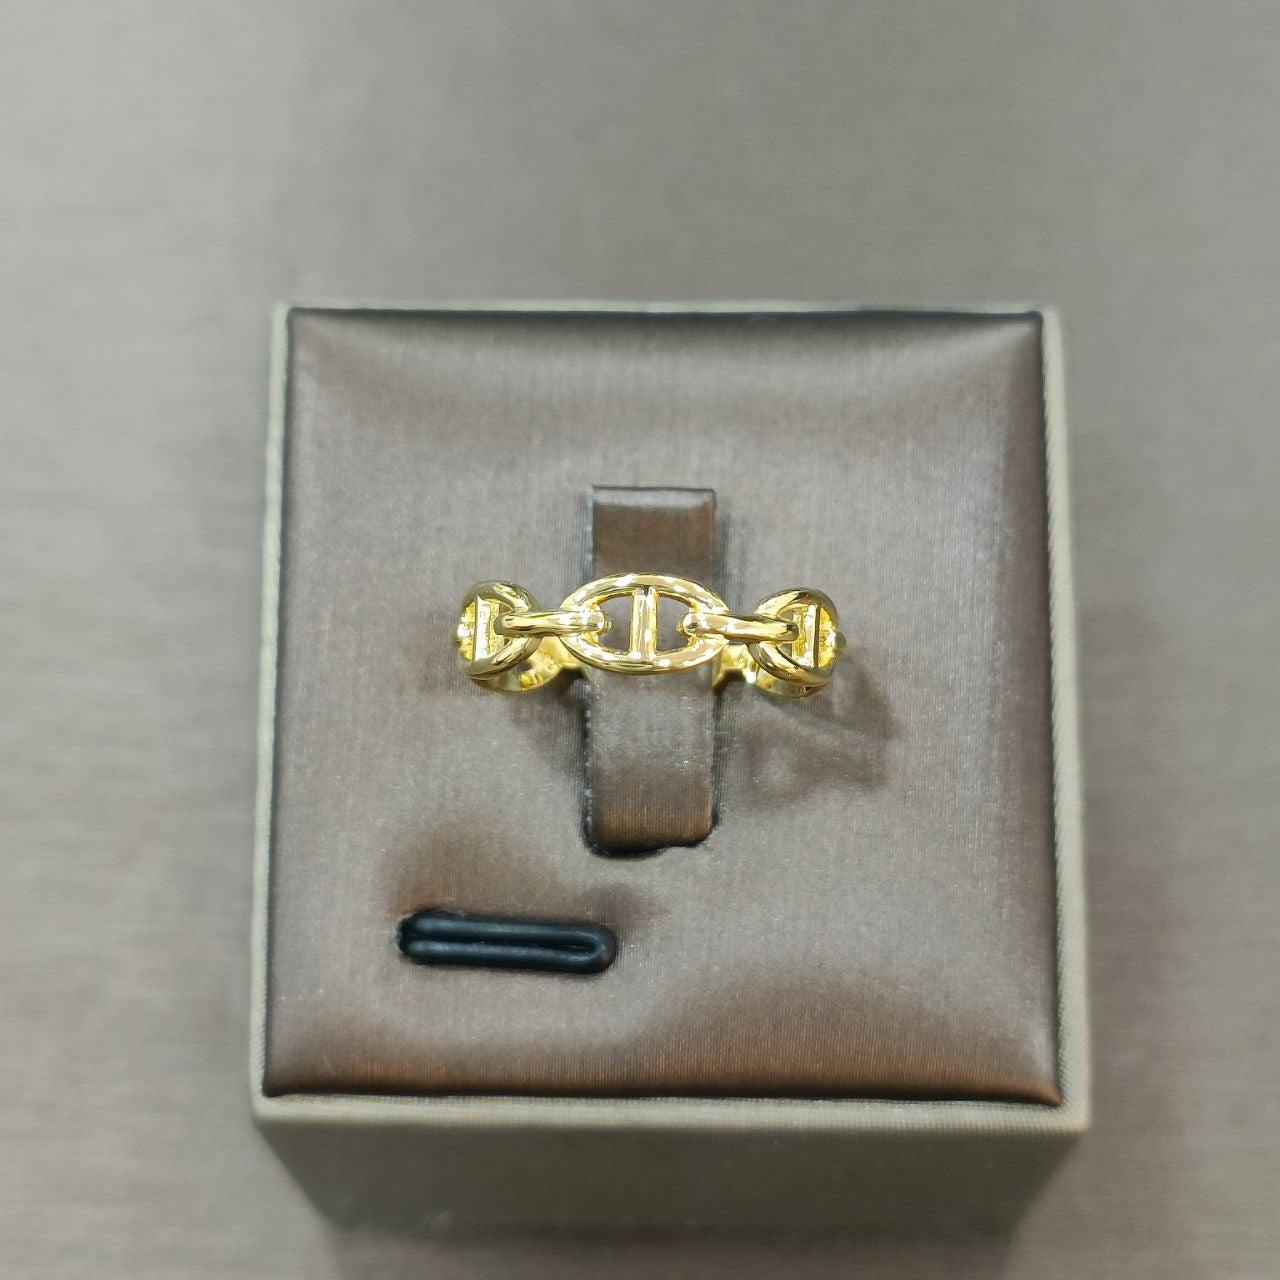 22k / 916 Gold H Design Ring-916 gold-Best Gold Shop